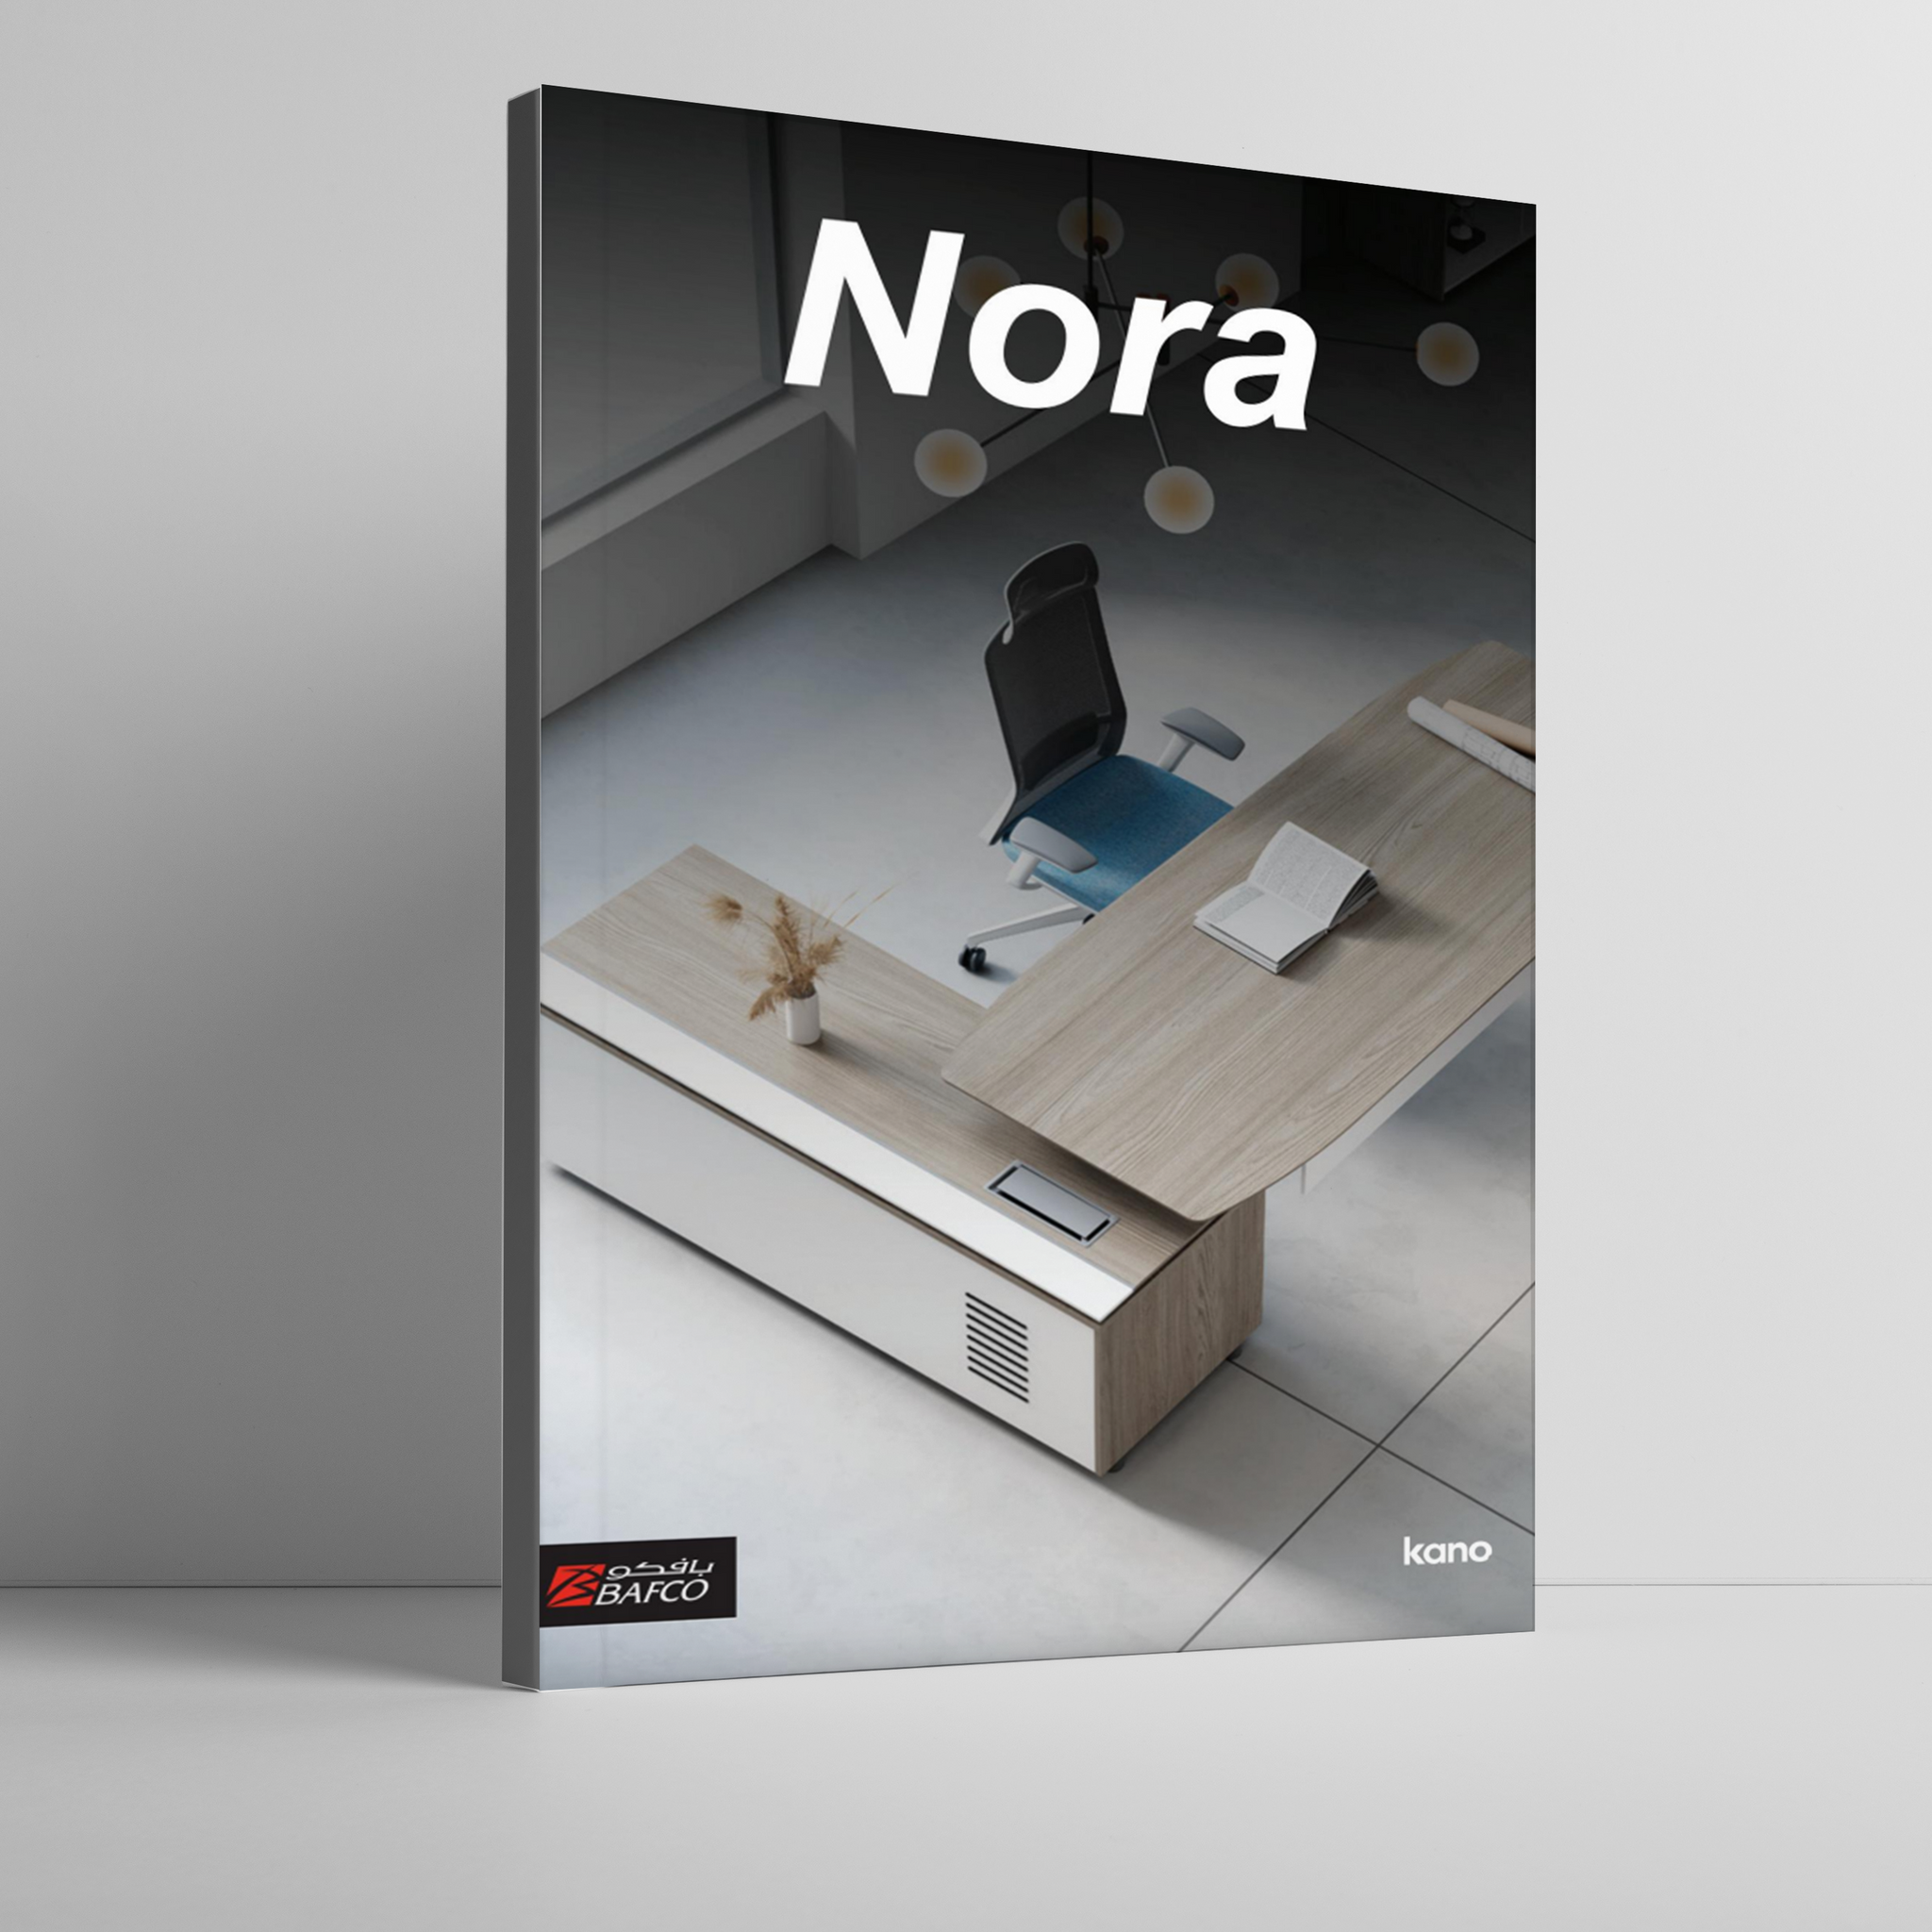 Nora Workstation Brochure (35MB) - BAFCO